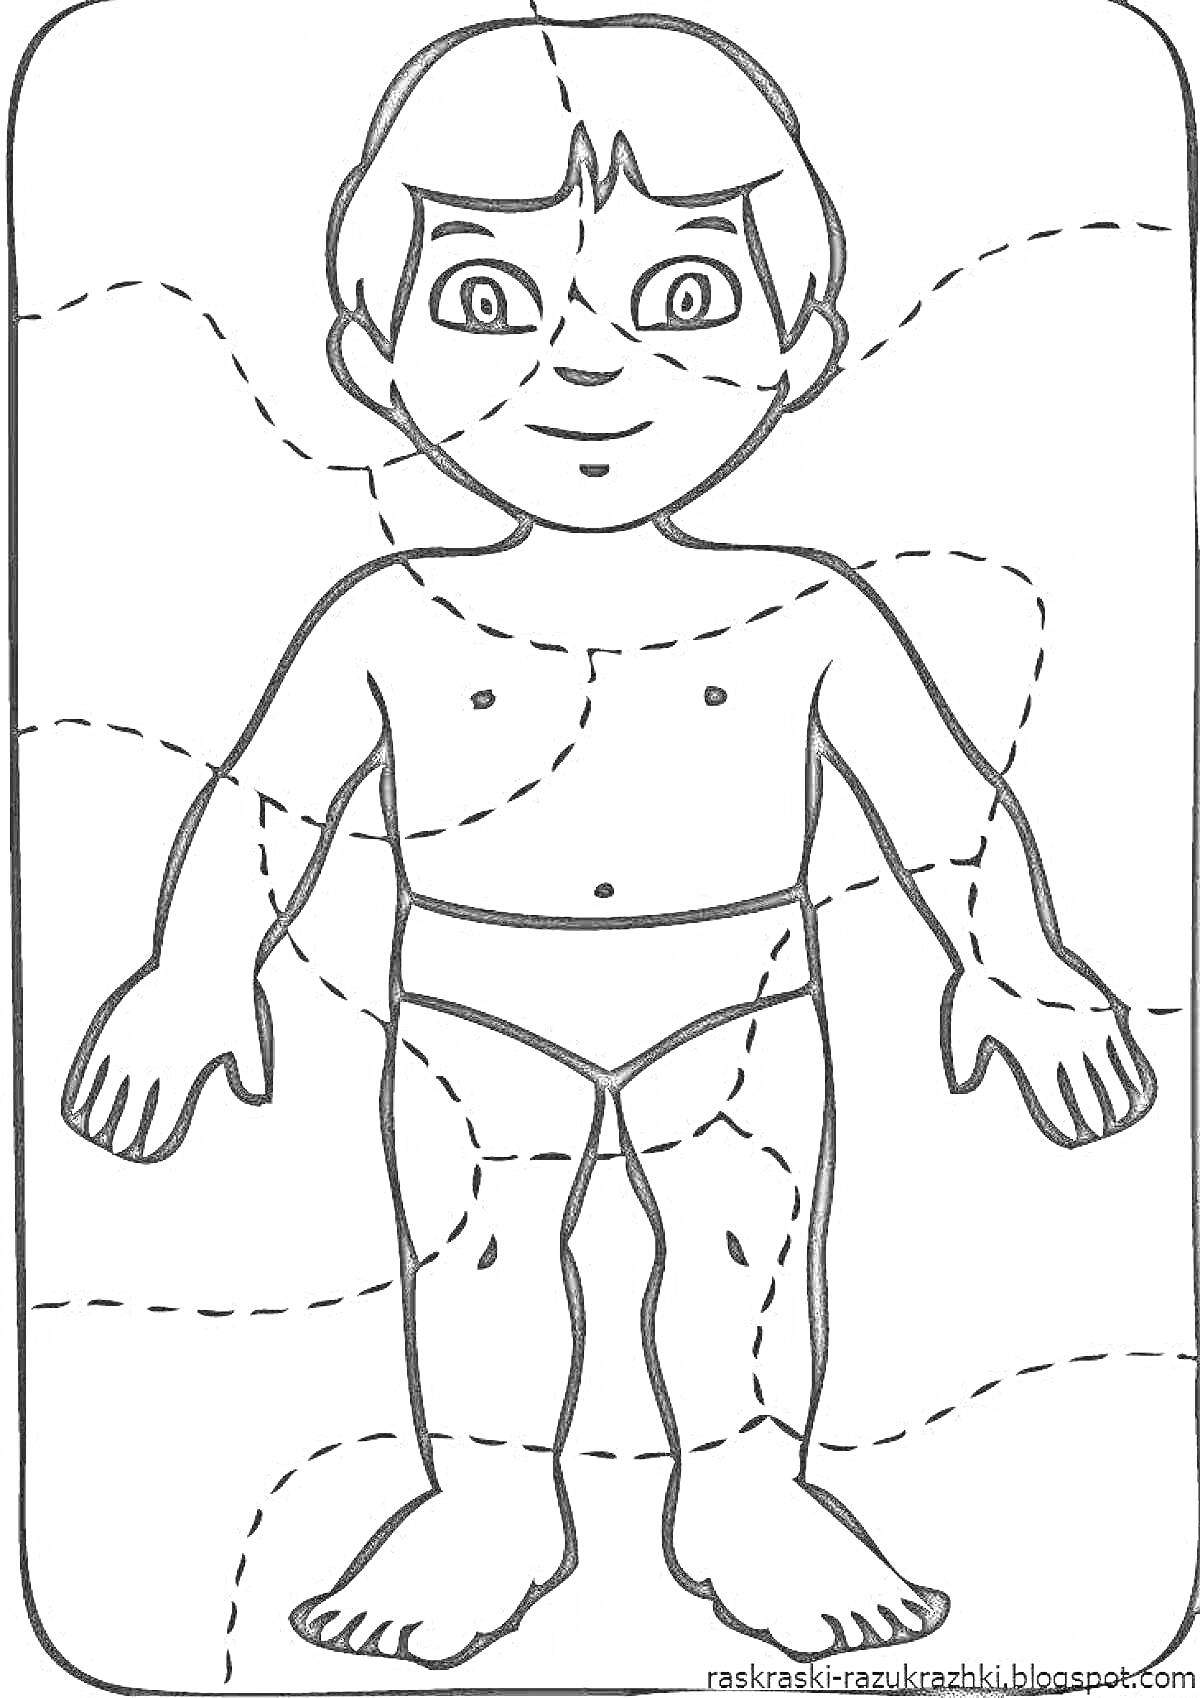 Раскраска Человек с отмеченными частями тела (голова, плечи, руки, ноги, туловище)